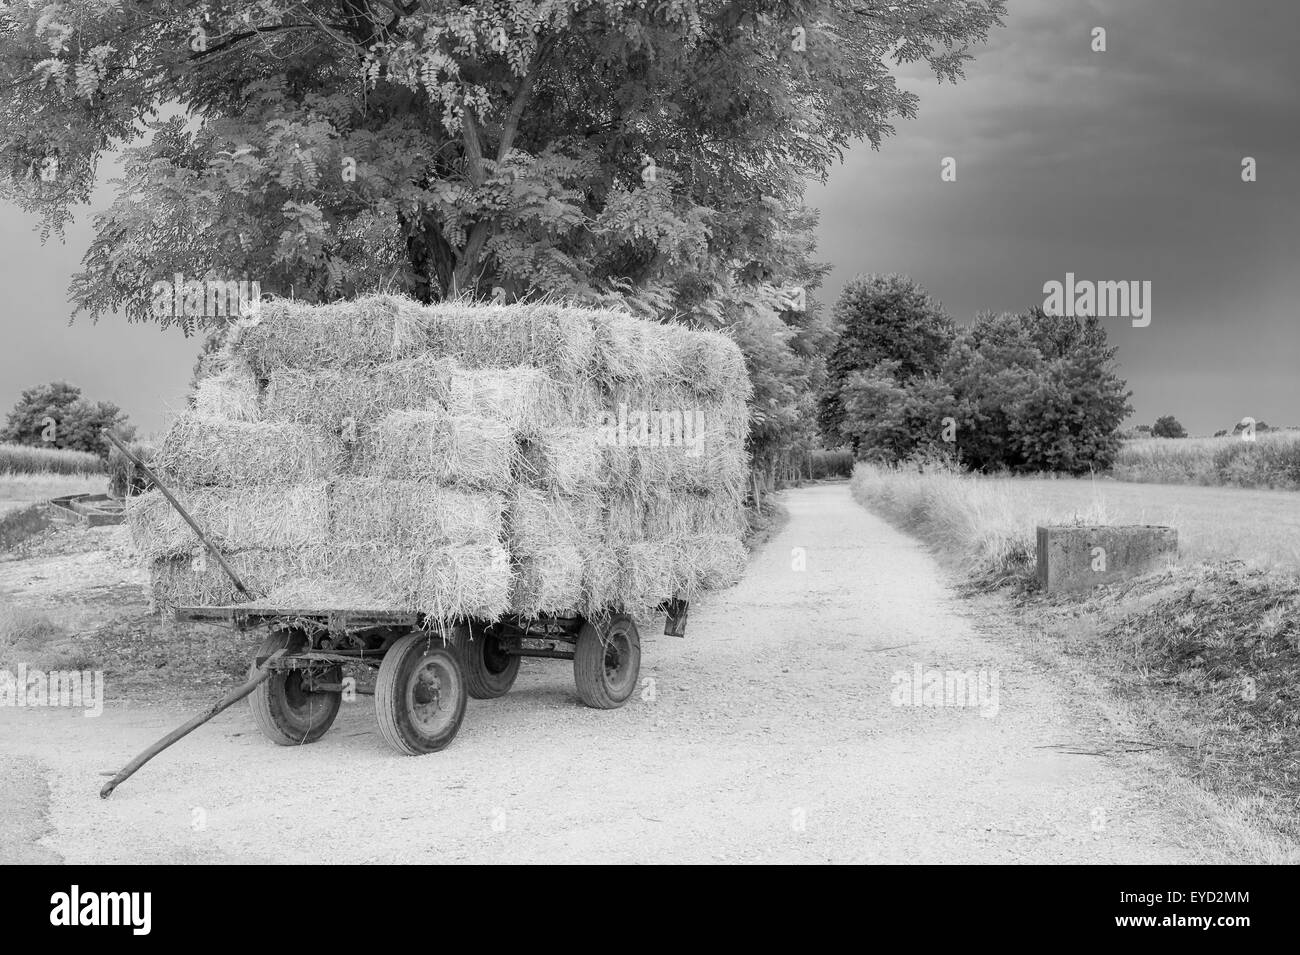 Panier ferme avec hay bales stacked à gauche sur la route ( noir e blanc) Banque D'Images